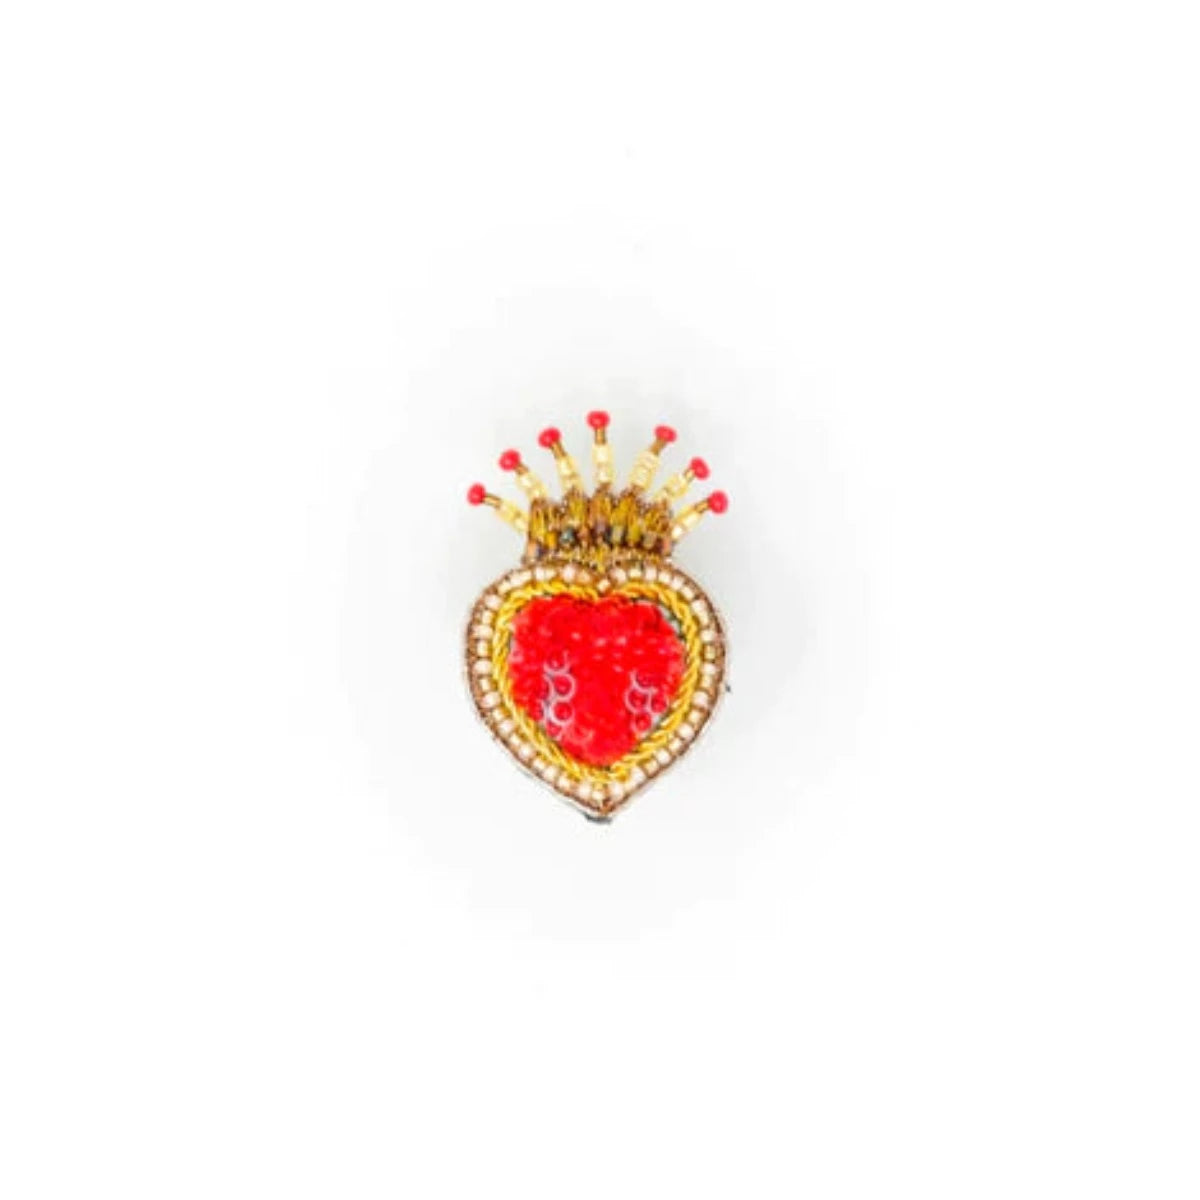 Queen of Hearts Brooch Pin